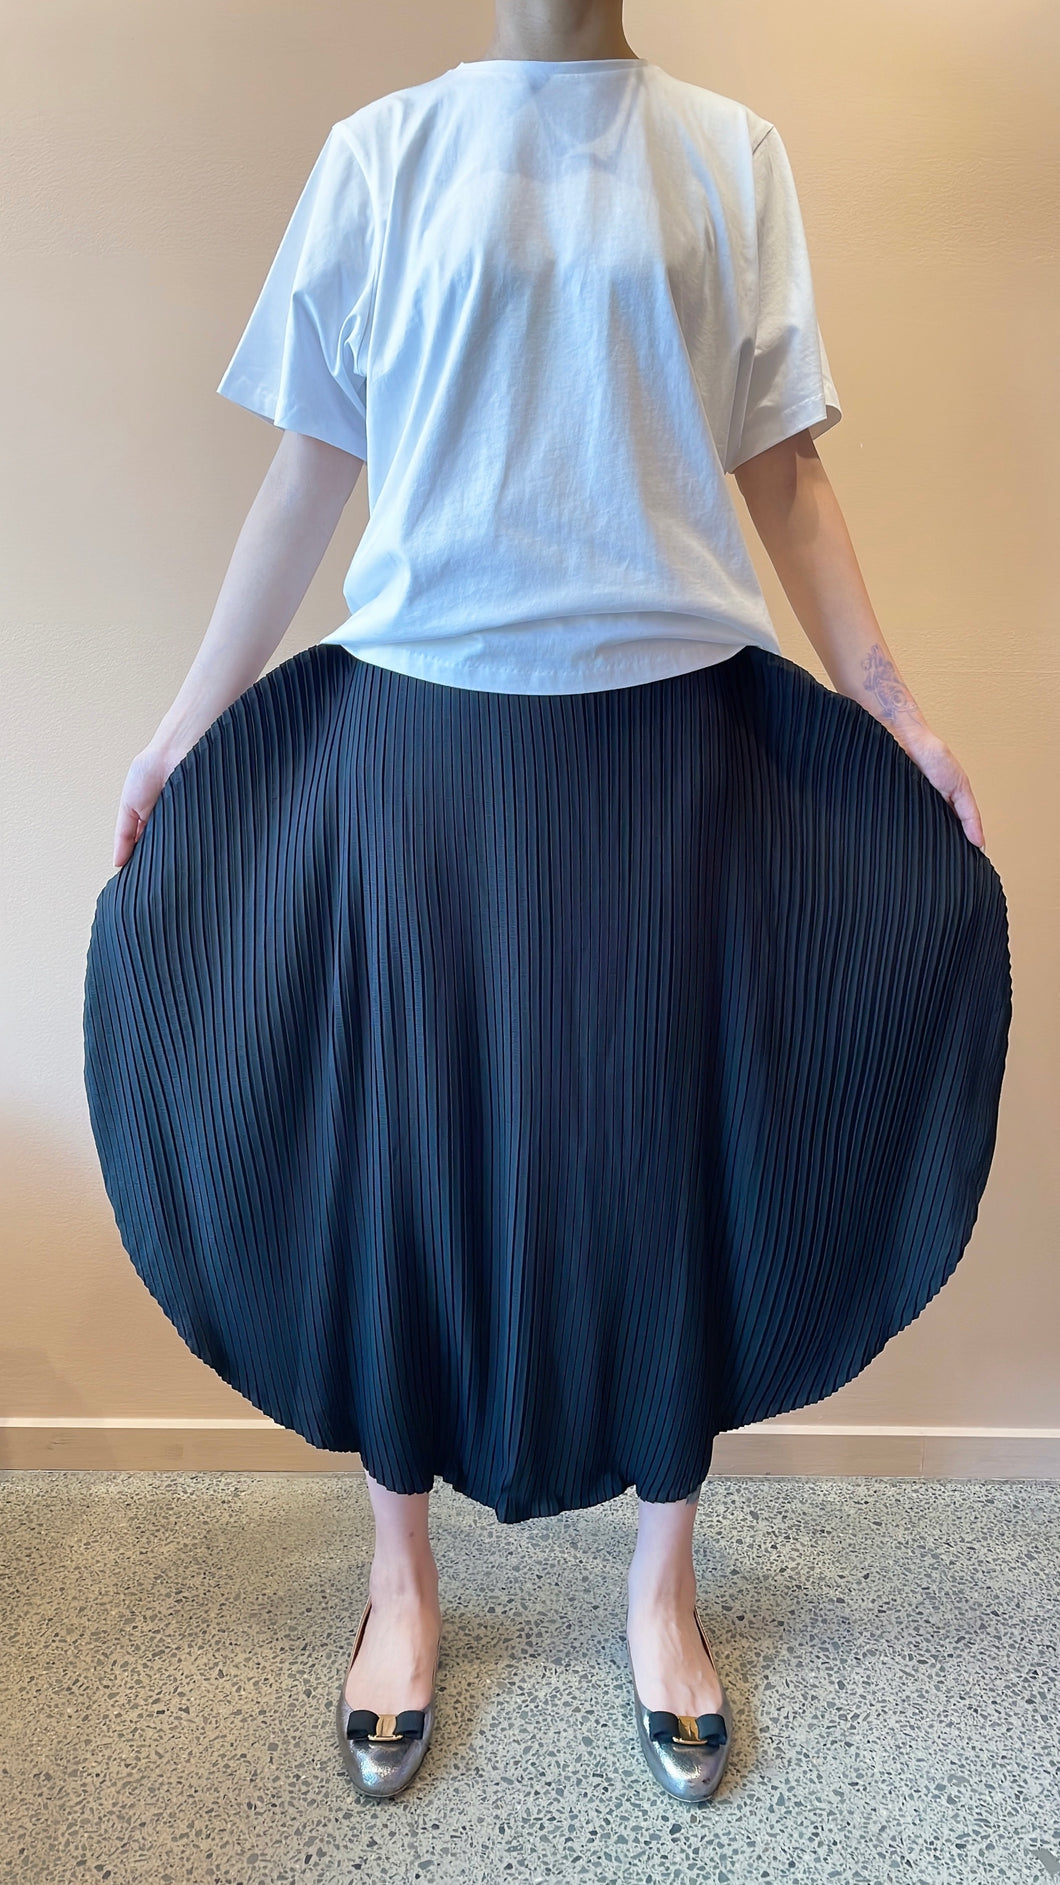 Goffer Balloon Skirt